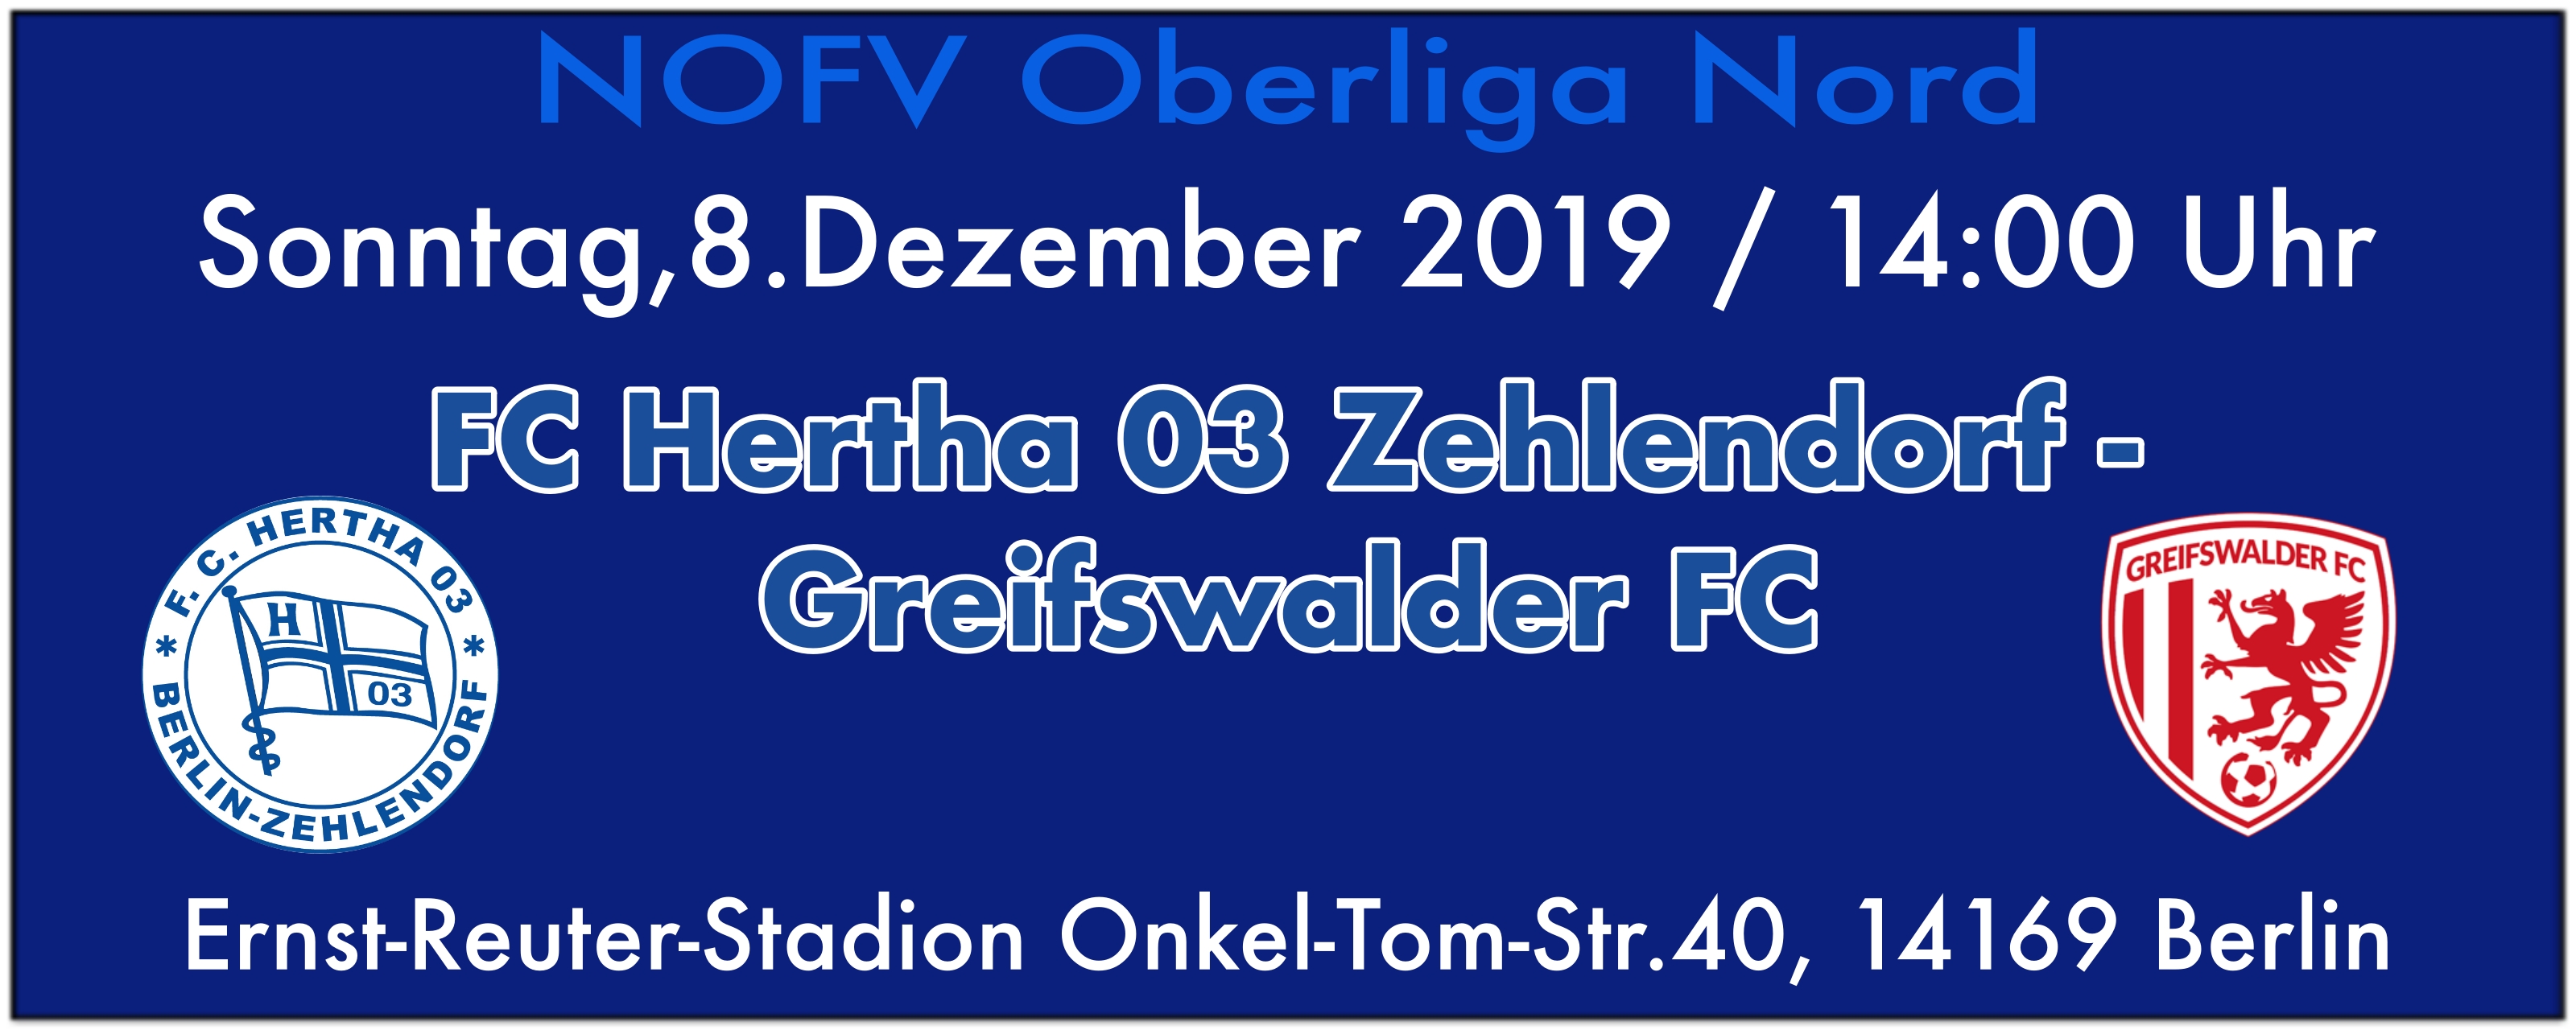 FC Hertha 03 Zehlendorf vs. Greifswalder FC am 8.12.2019